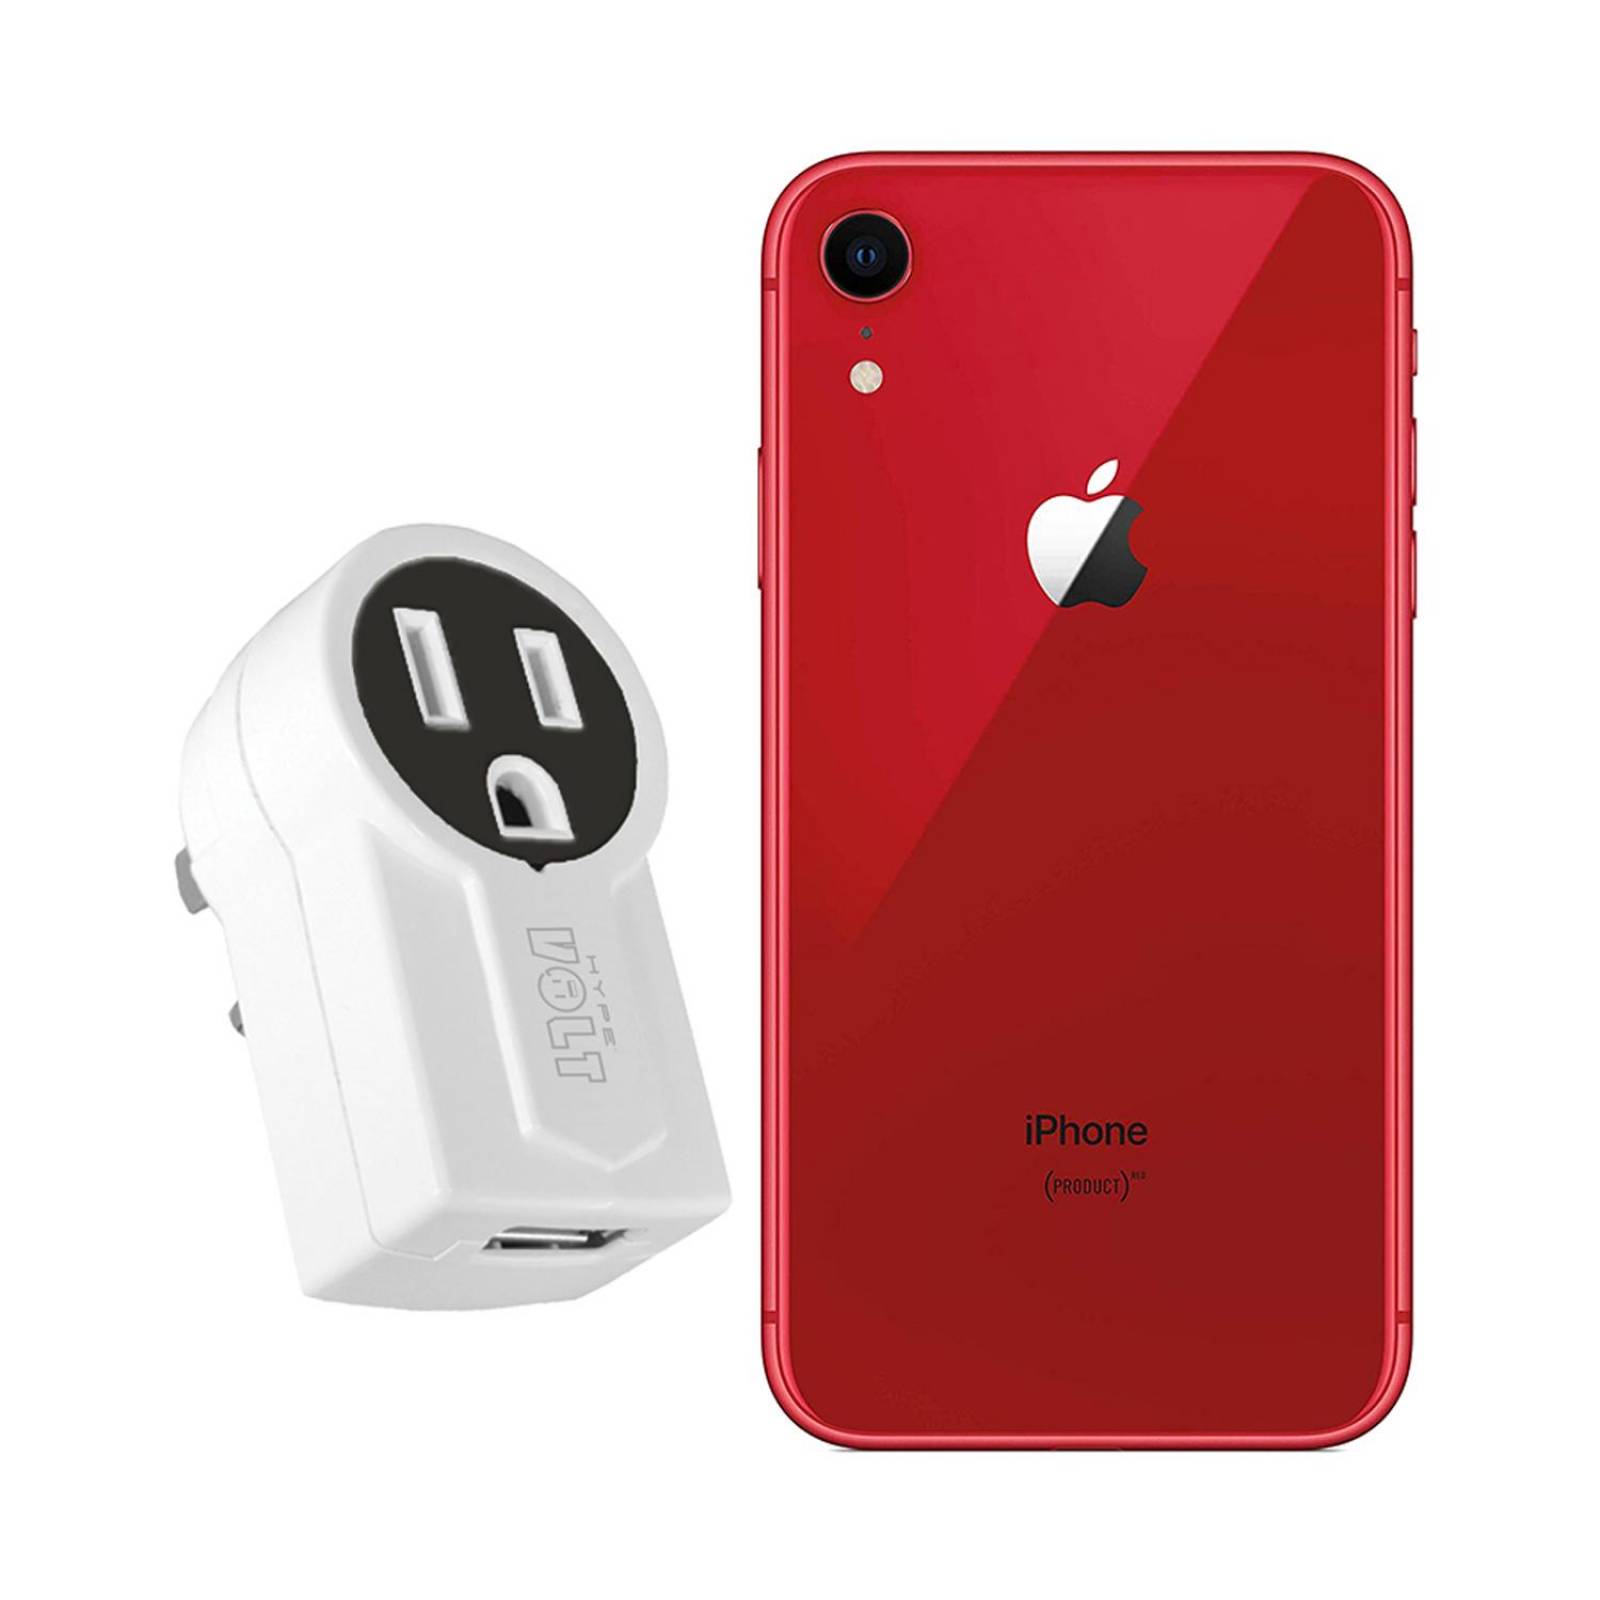 iPhone XR 64gb - Rojo (Reacondicionado)